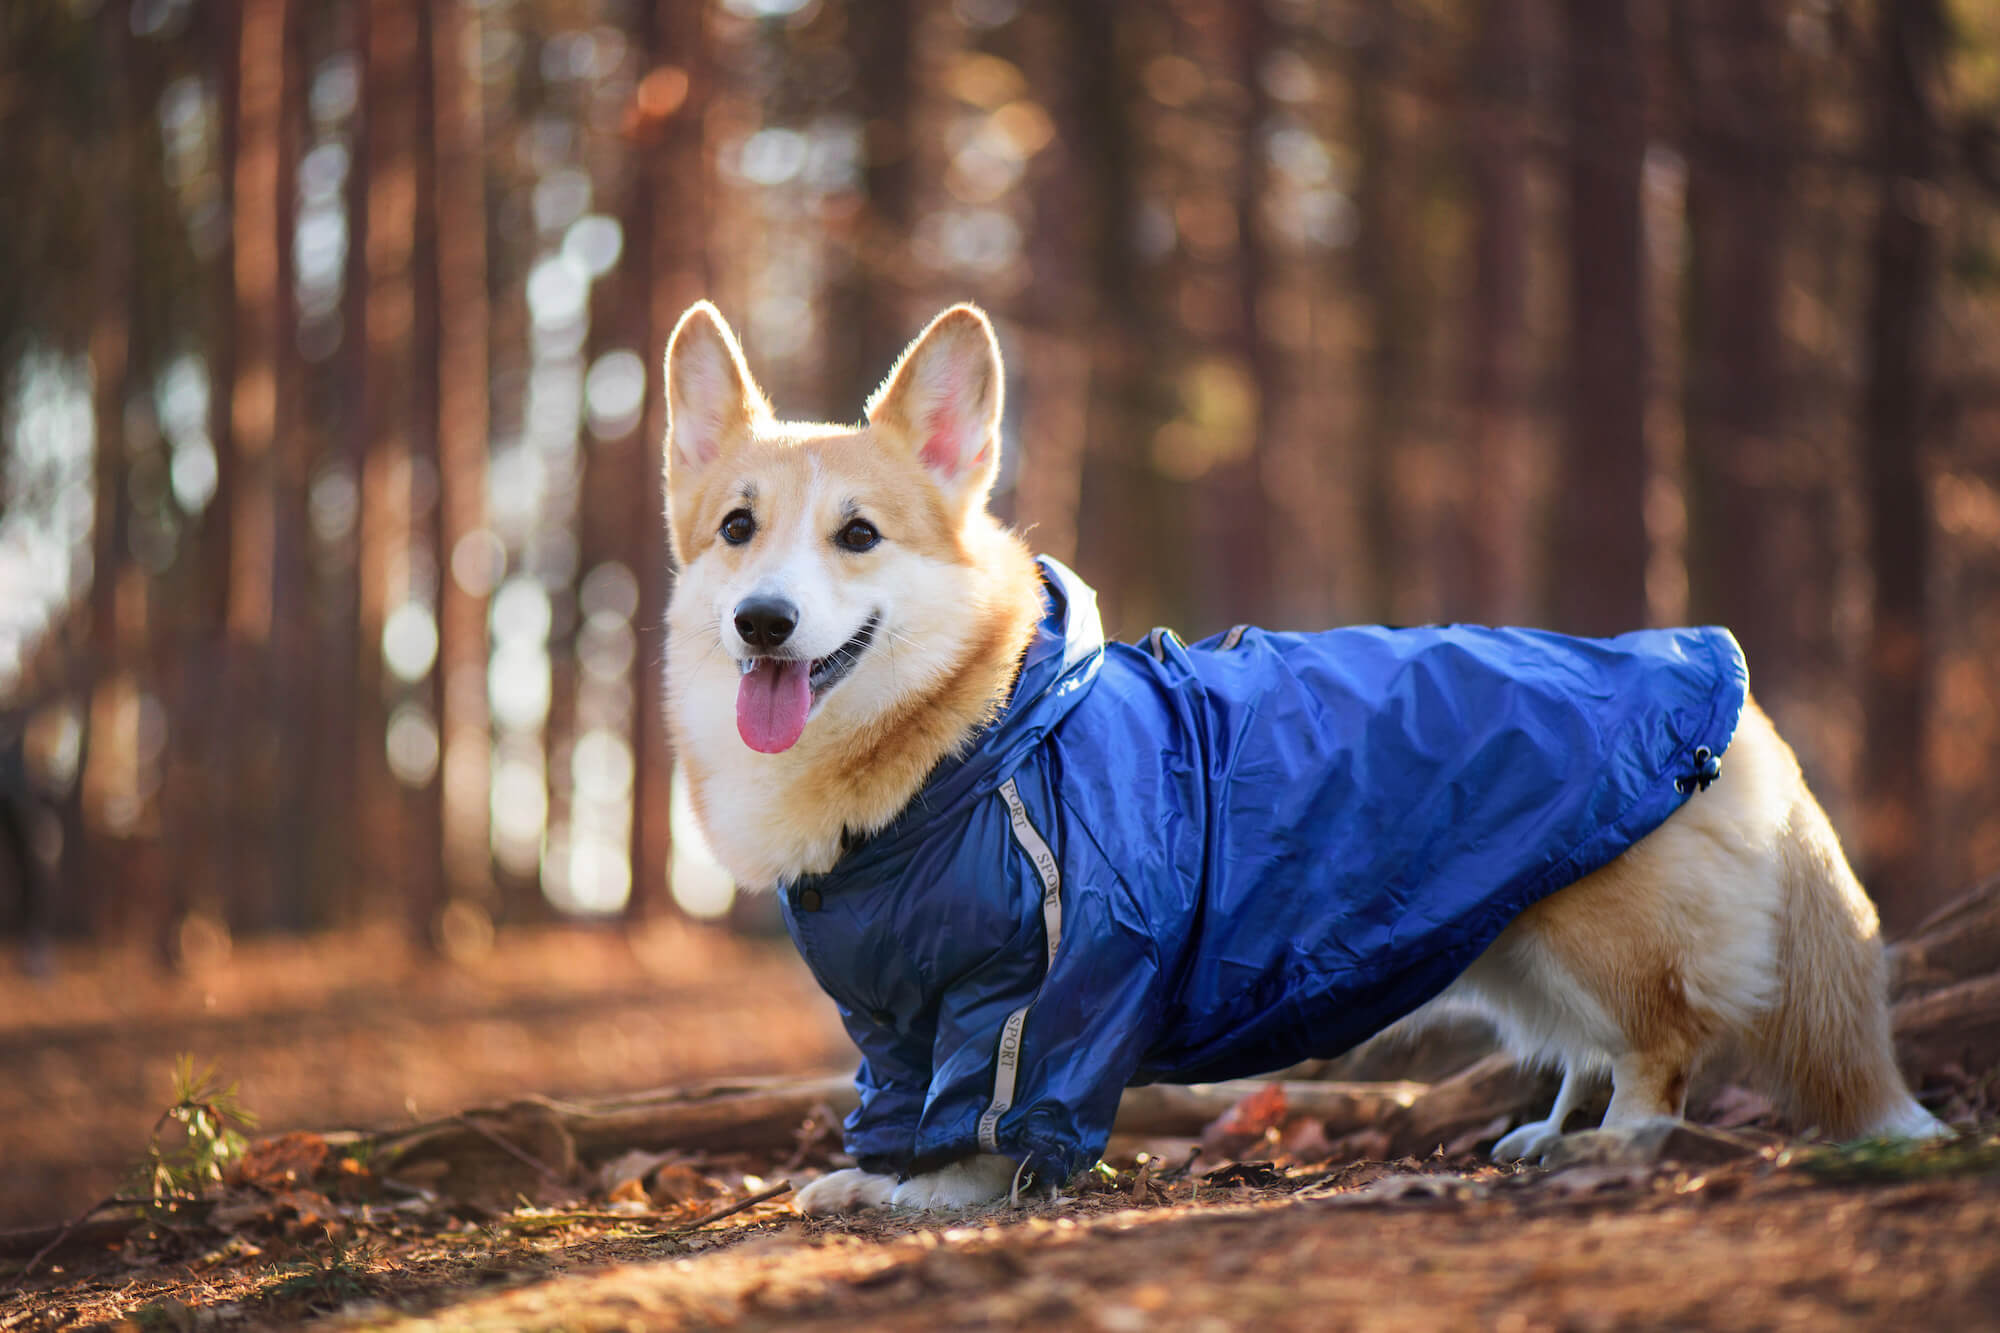 Vsepropejska Enola zimní bunda pro psa Barva: Modrá, Délka zad (cm): 20, Obvod hrudníku: 30 - 32 cm